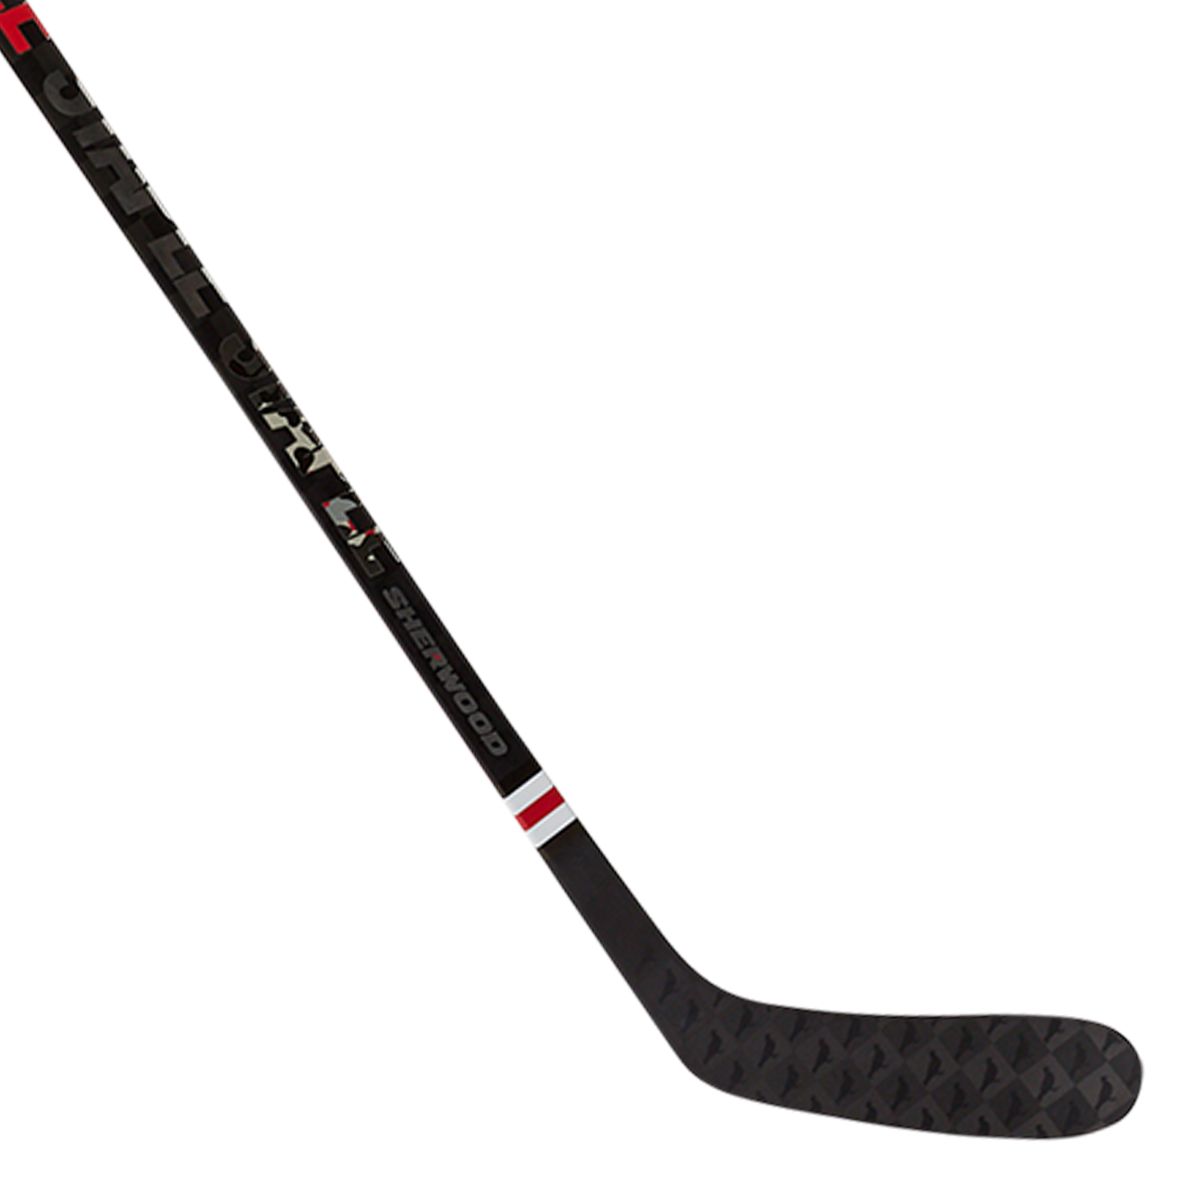 Sherwood X STAPLE Senior Hockey Stick